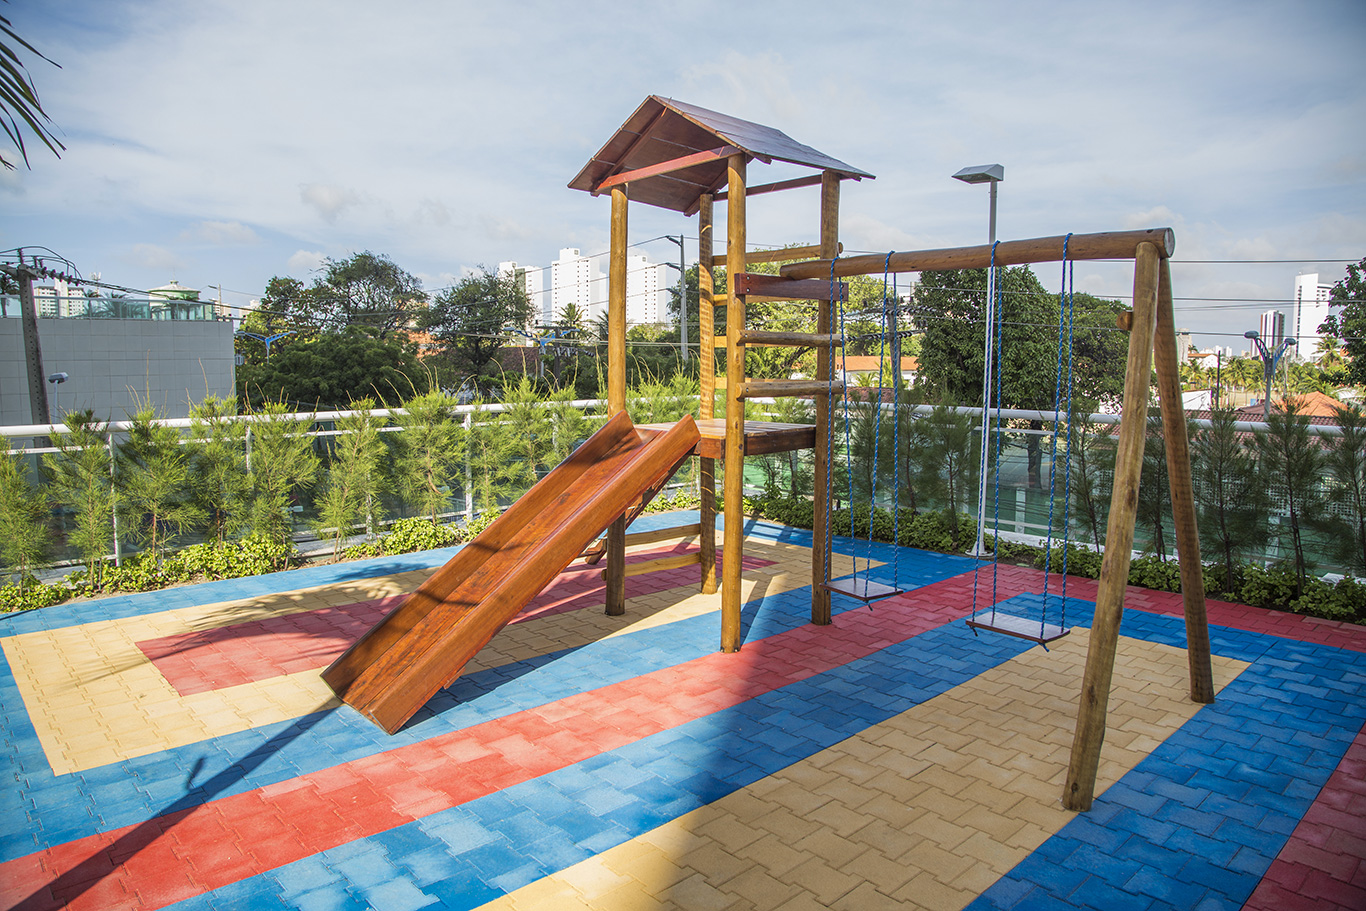 prisma-playground